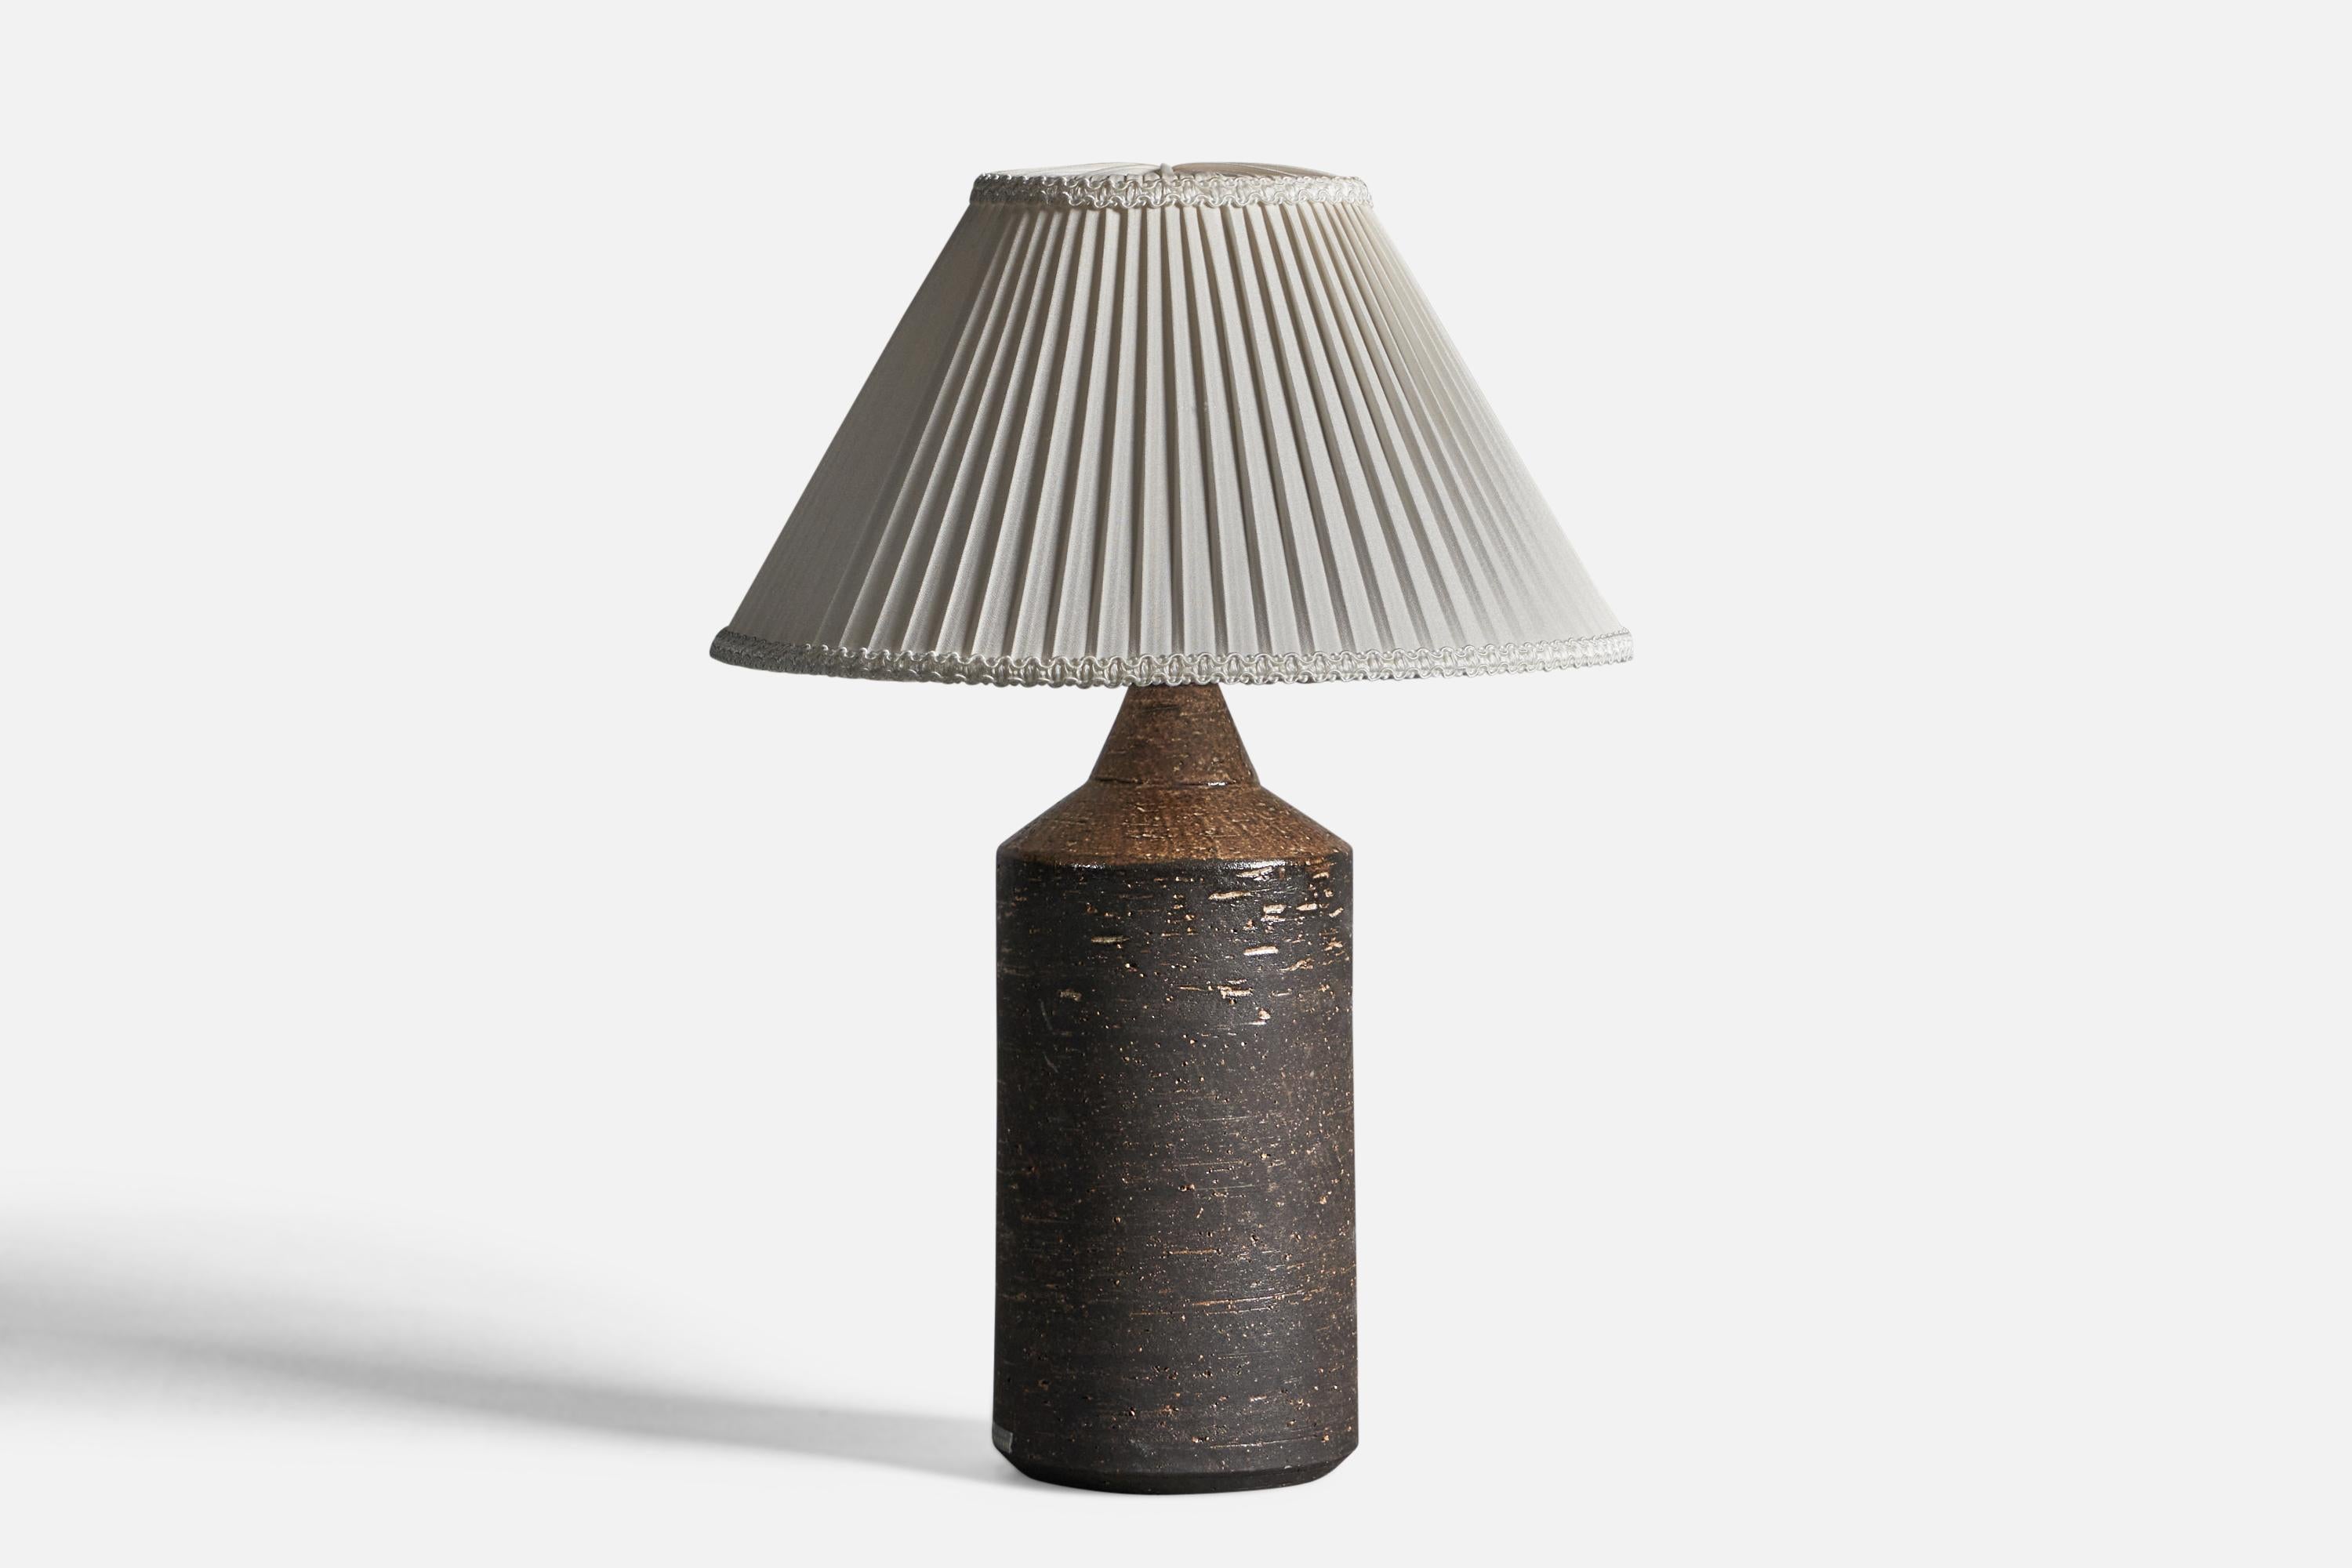 Lampe de table en grès semi-émaillé brun et tissu, conçue et produite par Bo Borgström, Suède, années 1960.

Dimensions globales (pouces) : 13